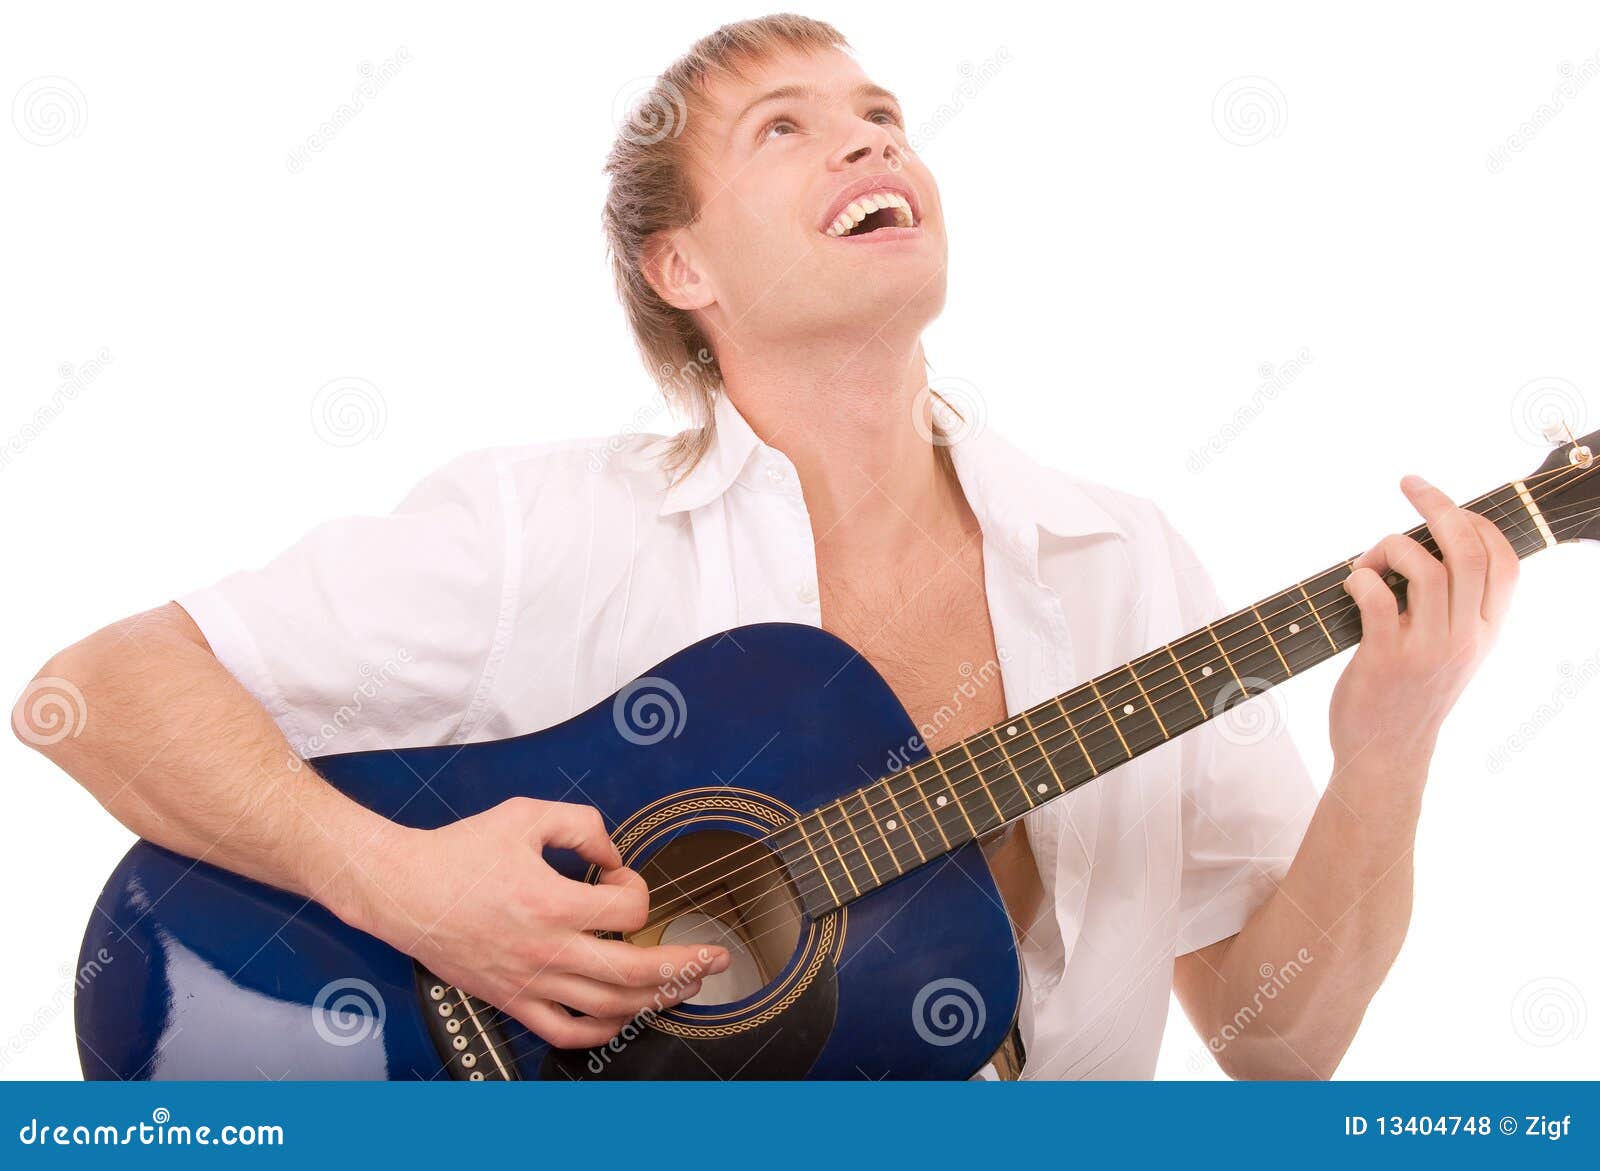 Мужчина поет на гитаре. Гитара в руках. Человек играет на гитаре. Мужчина играет на гитаре. Красивый мужчина улыбка с гитарой.